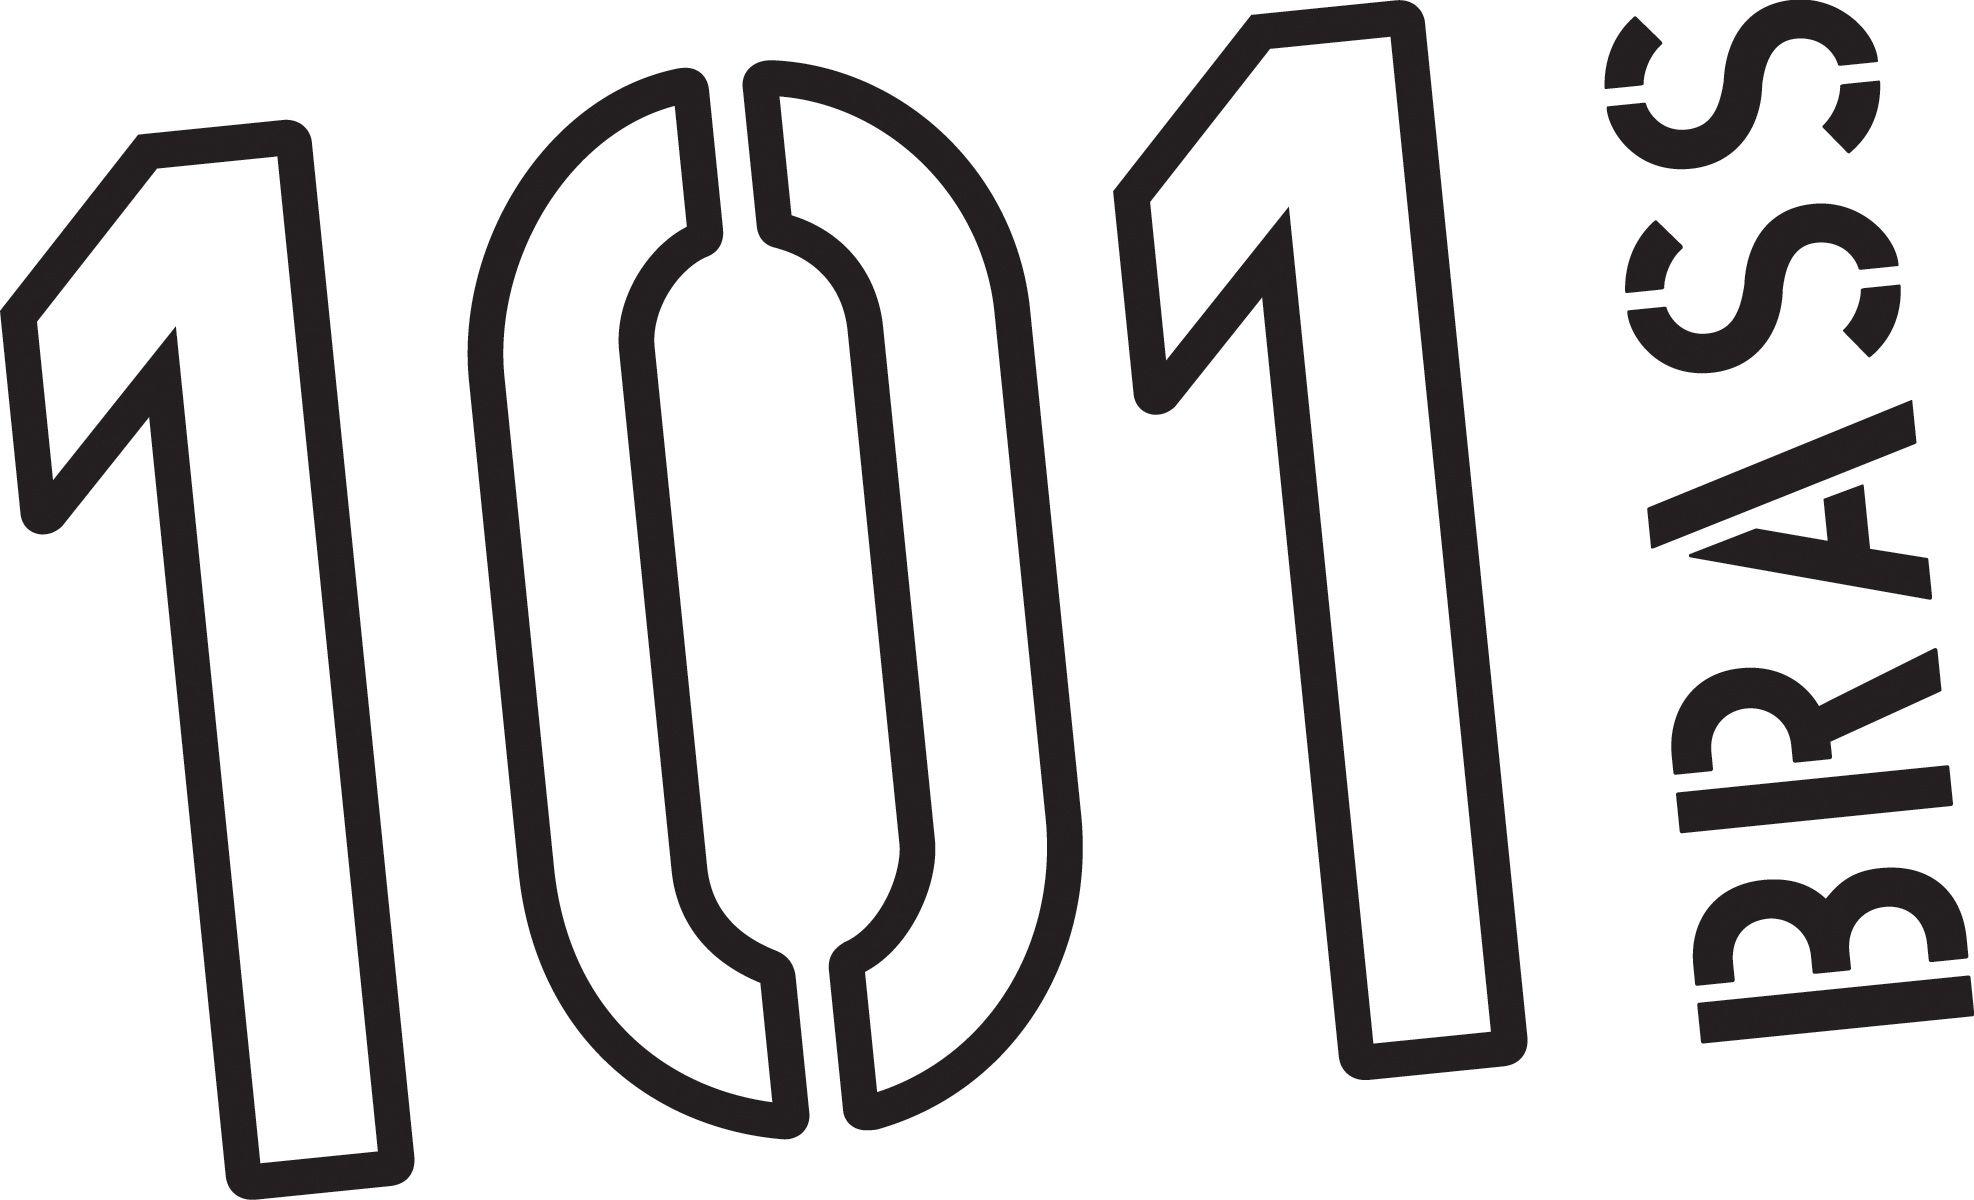 101 Logo - Index Of Public Logos